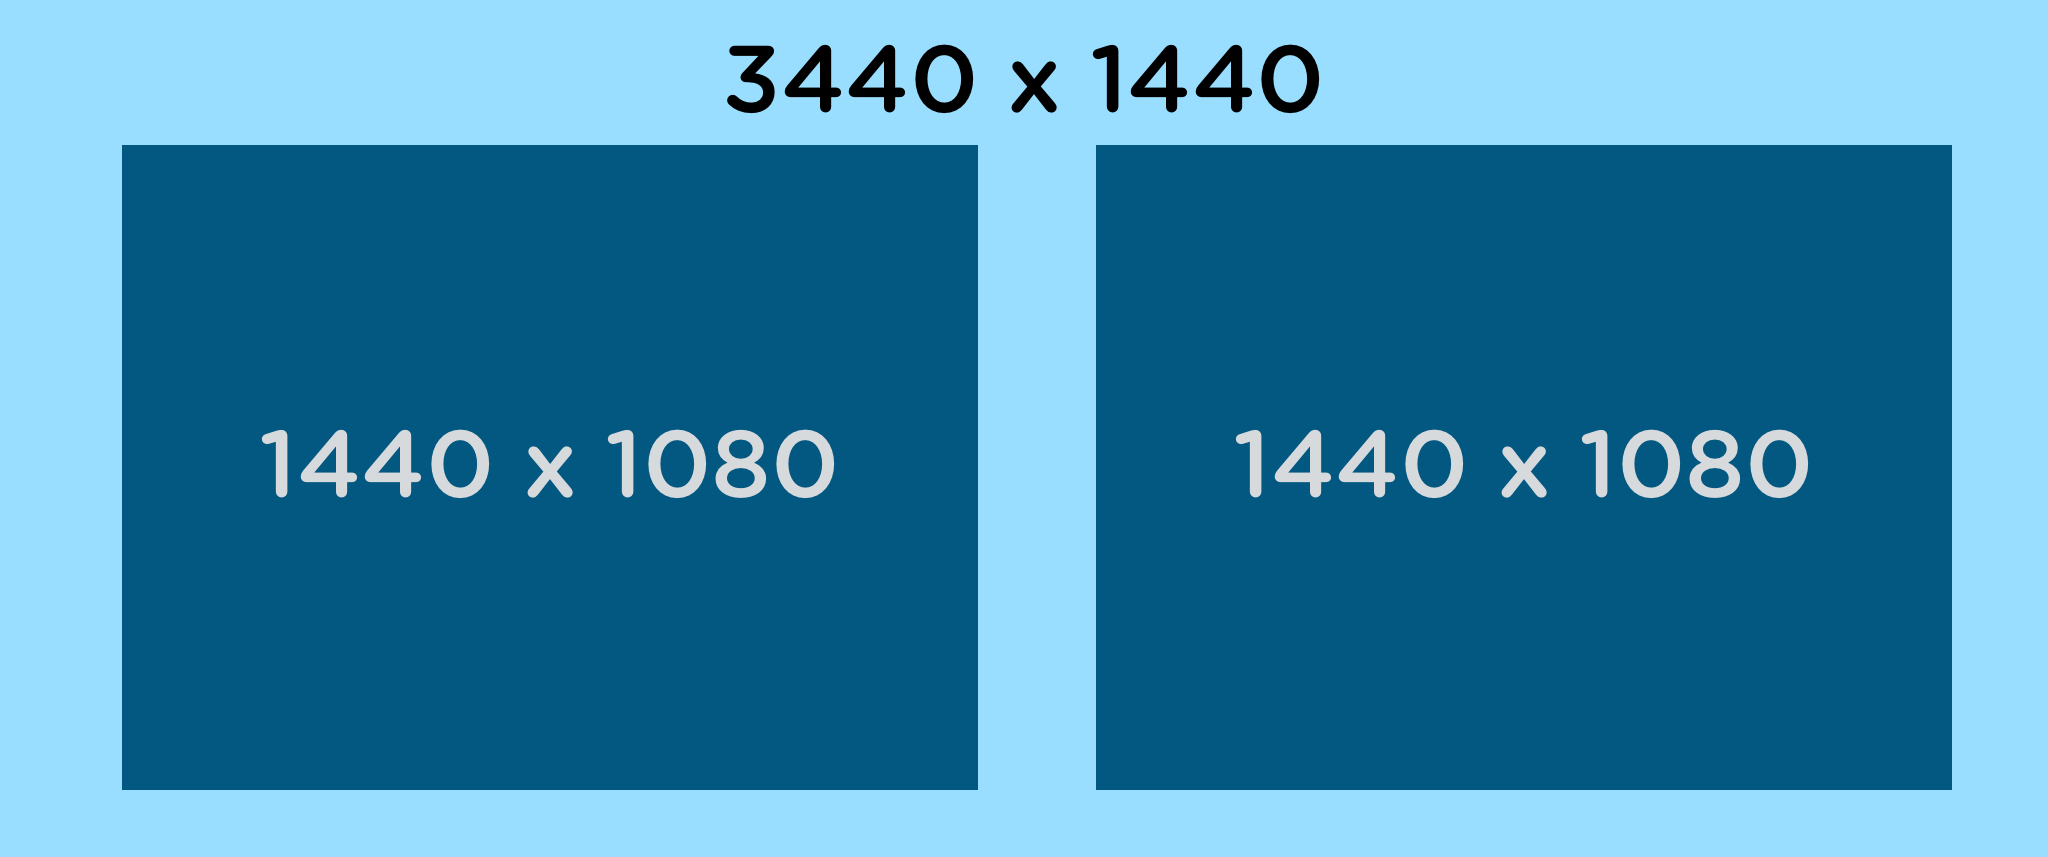 Vergleich von zwei Office-Monitoren mit 1440 × 1080 mit der Ultrawide WQHD Auflösung von 3440 × 1440.